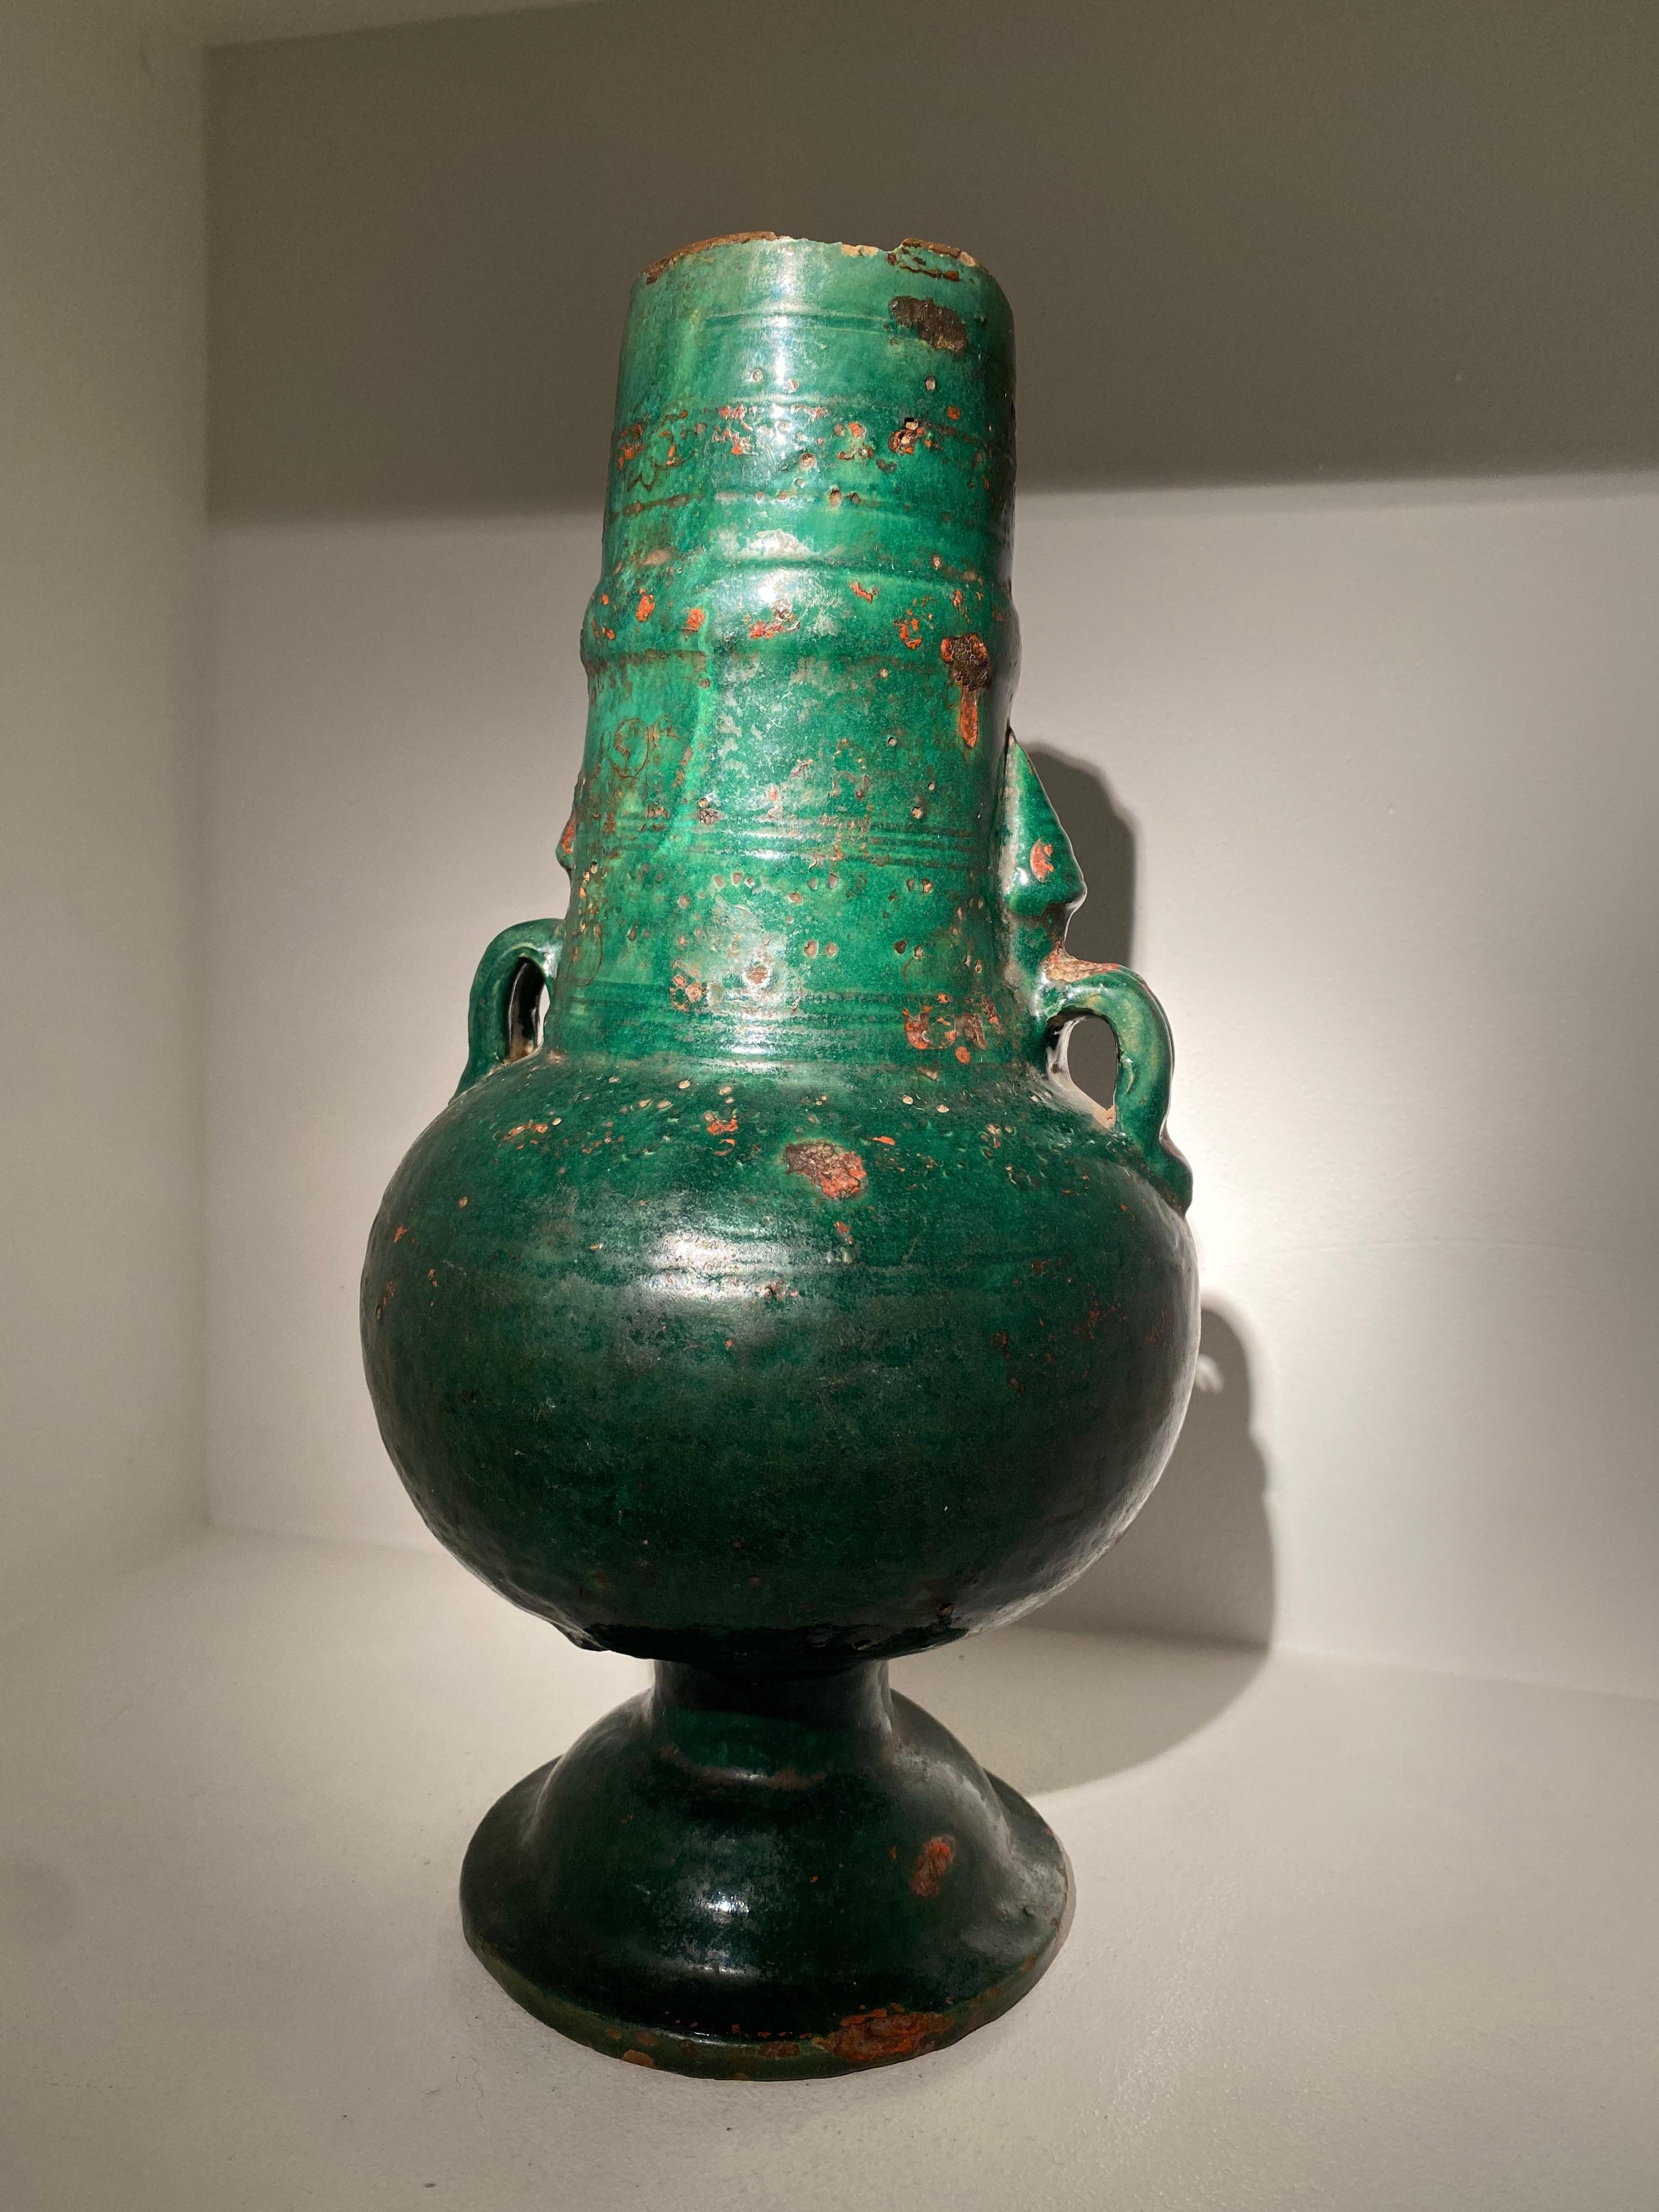 Schöne grün glasierte Vase aus dem Jemen,
Gute alte Patina, schöne elegante Form
Ab etwa 1890.